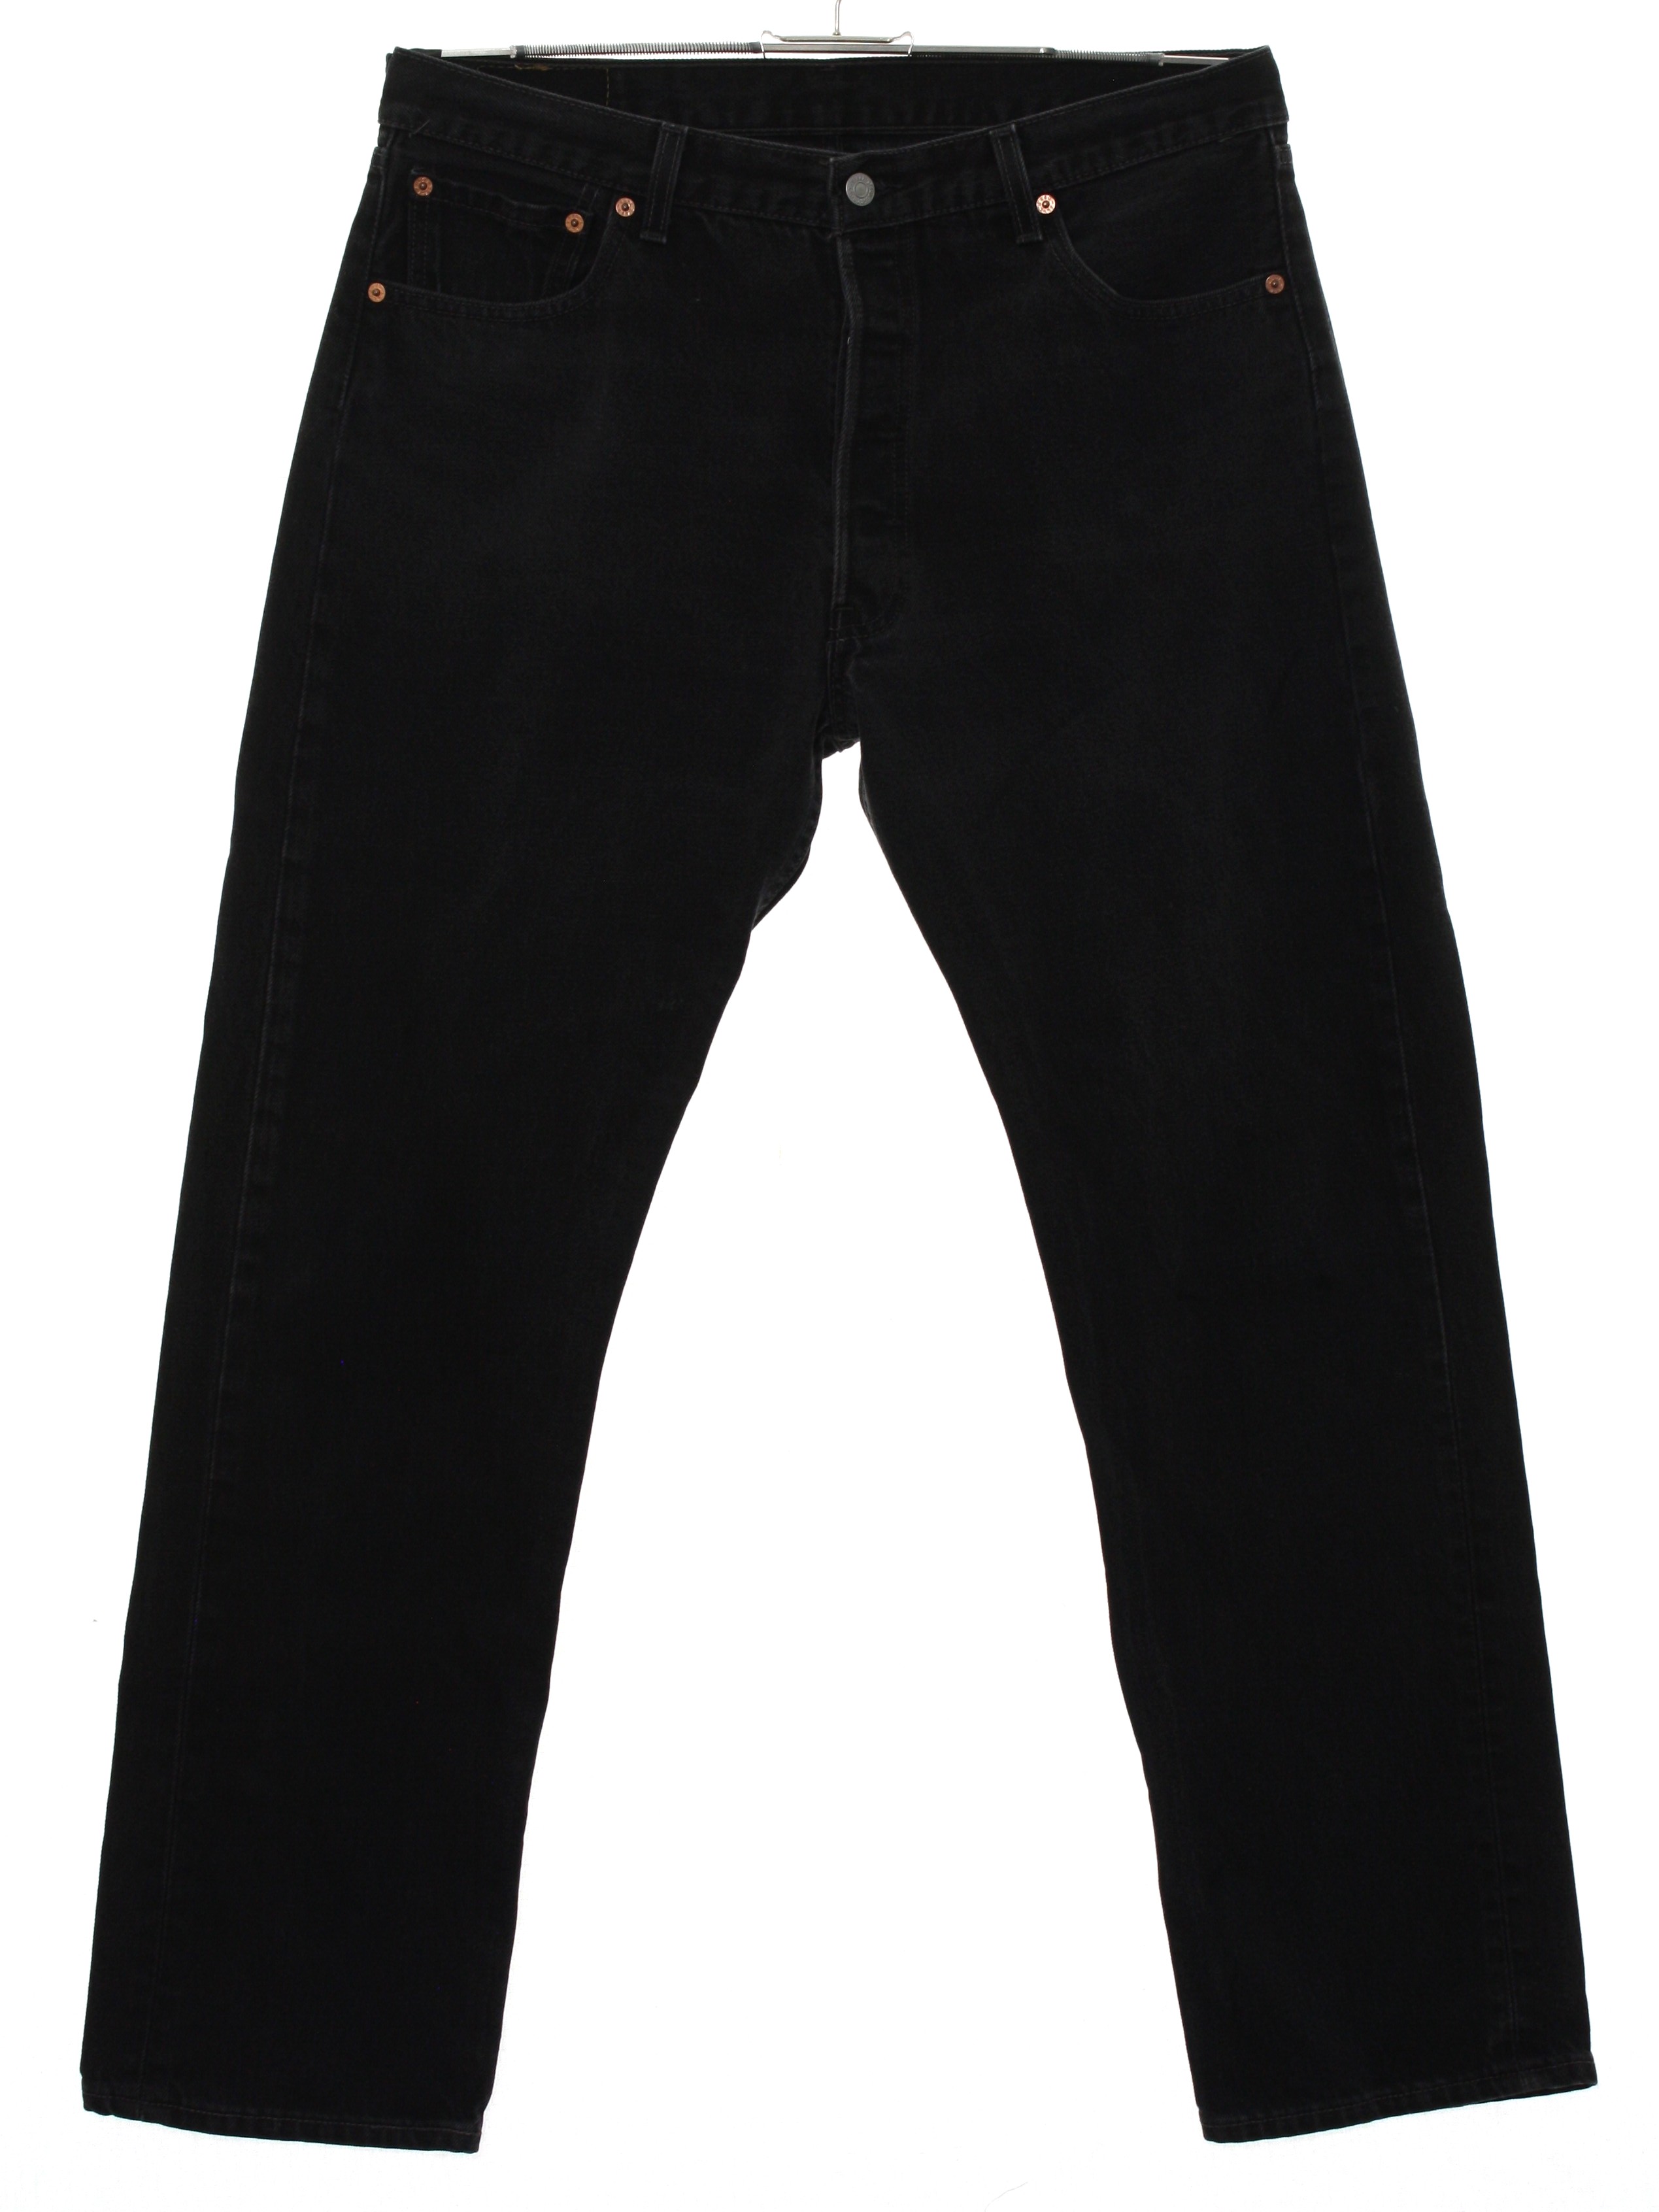 Retro 1980's Pants (Levis) : 80s -Levis- Mens black cotton denim button ...